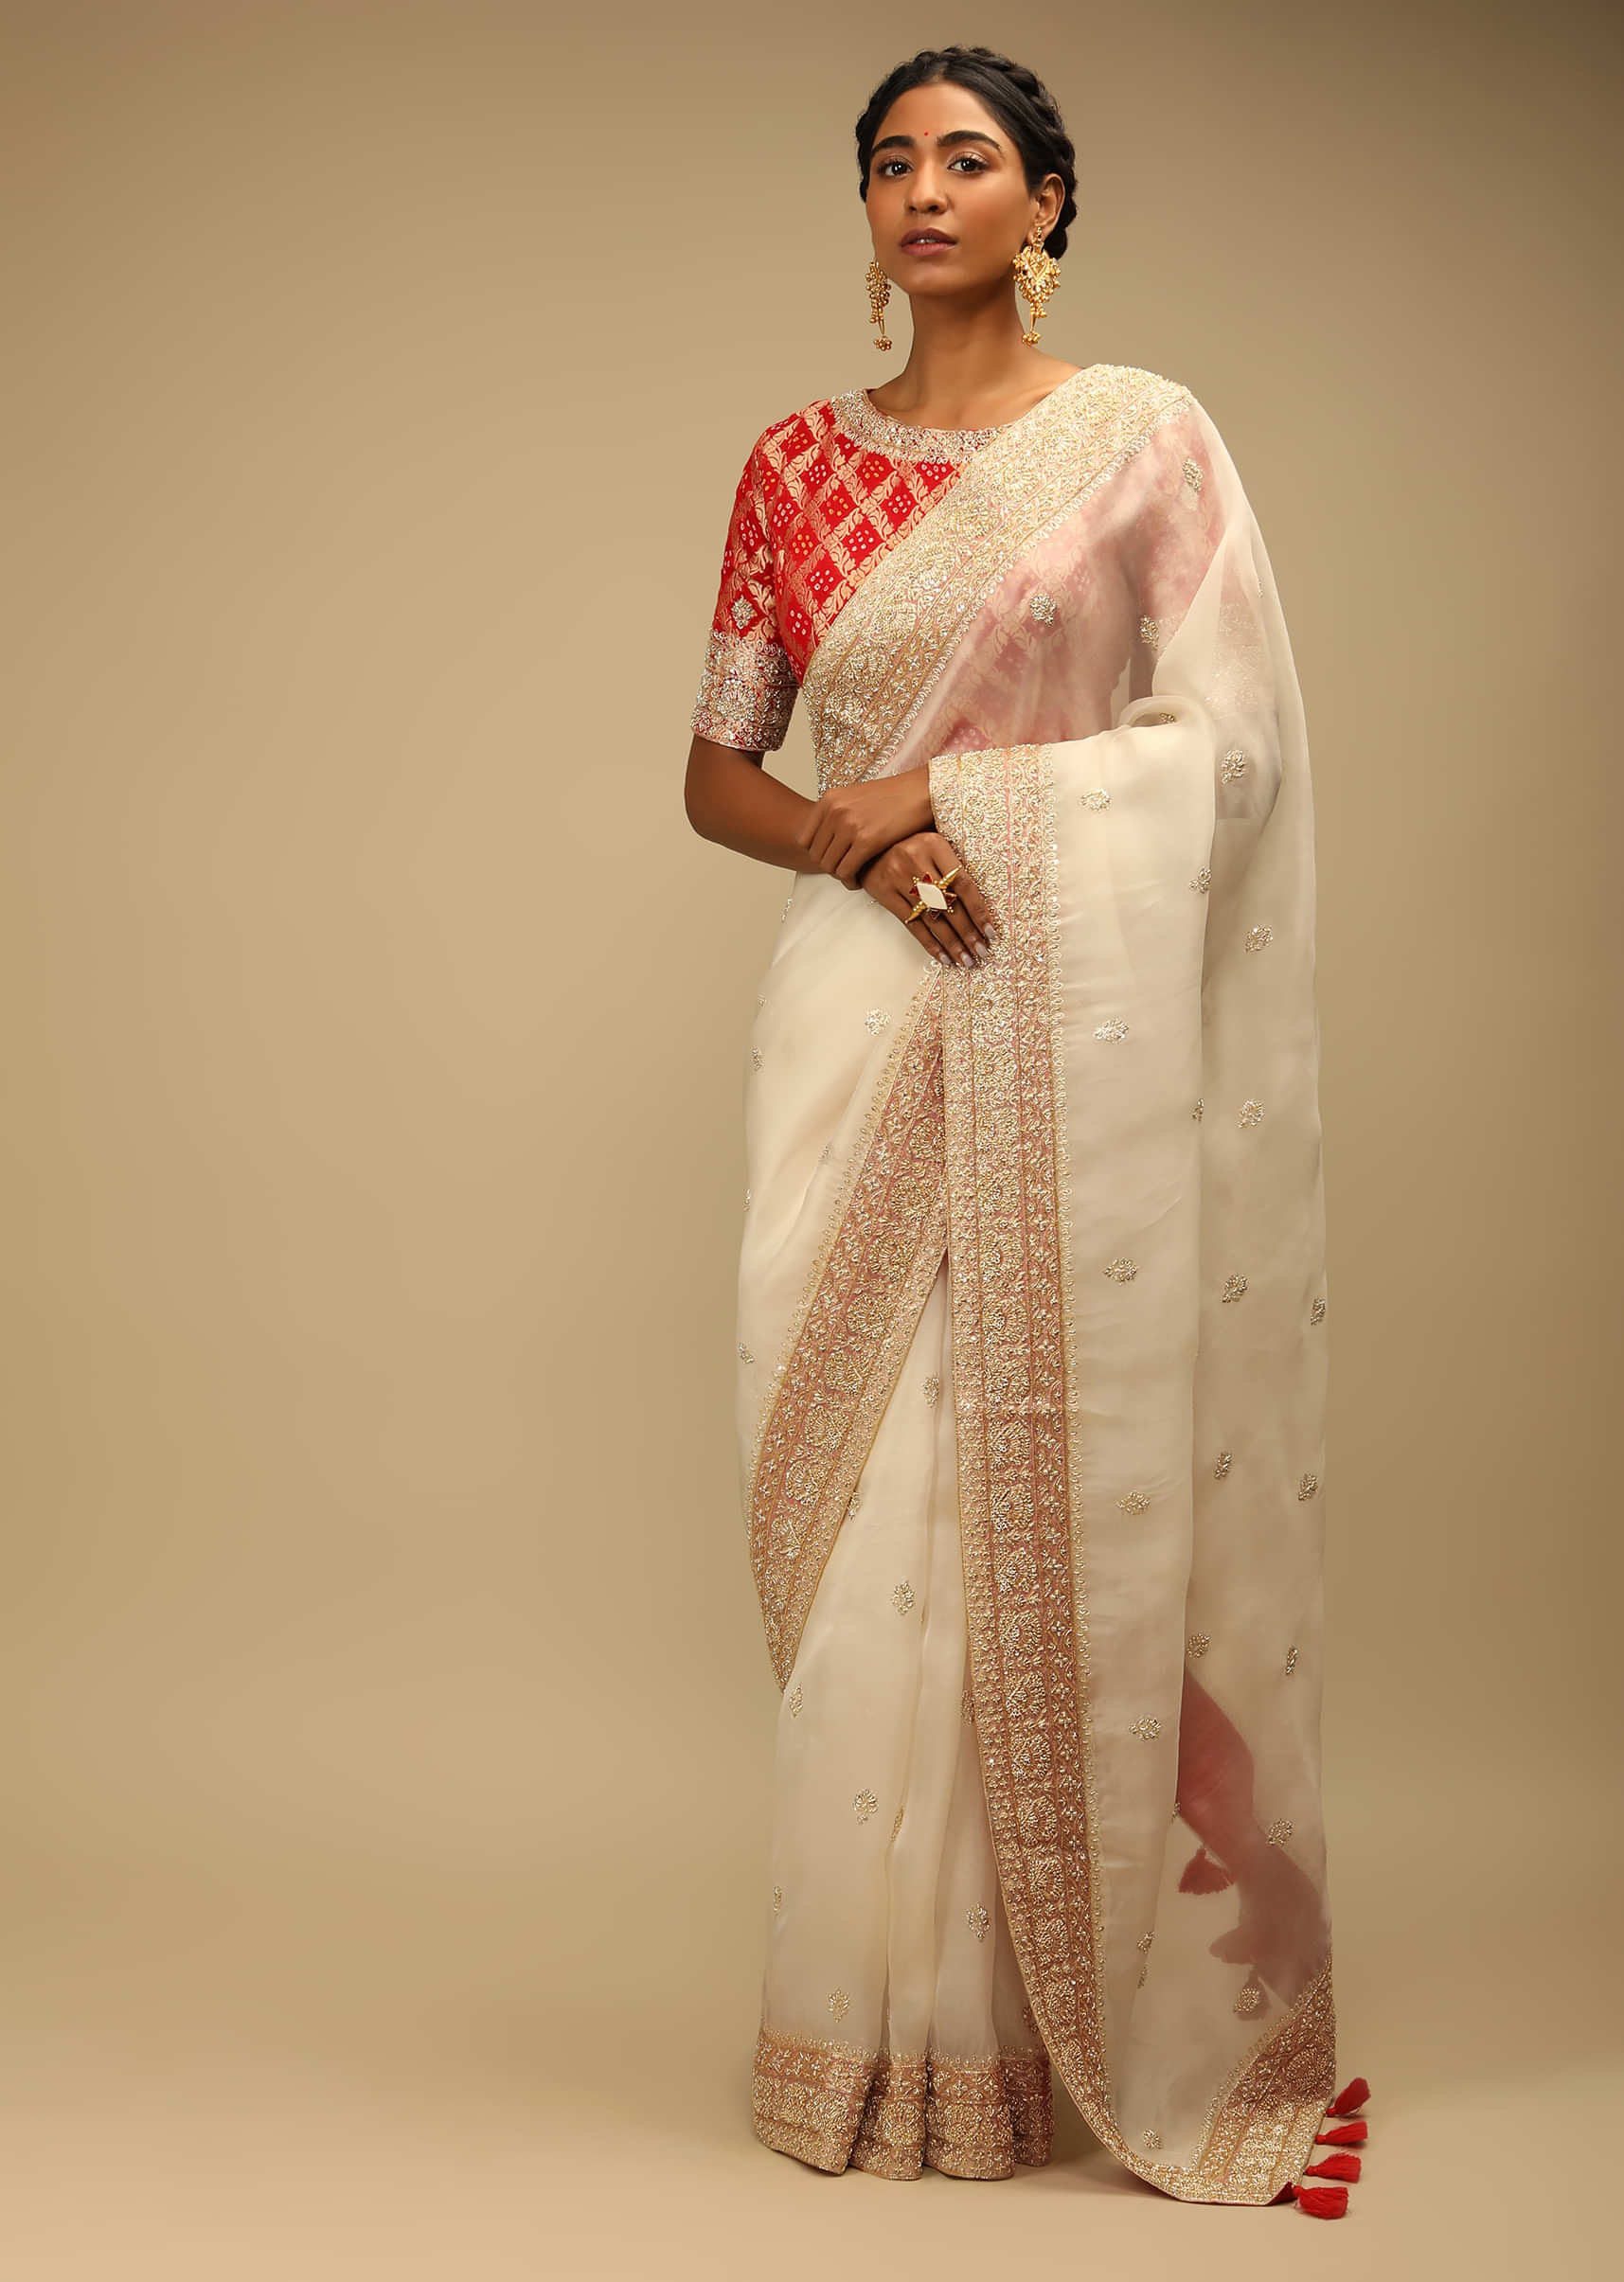 Indian lichi Silk Saree formal Wedding Ethnic wear white Designer women sari  | eBay